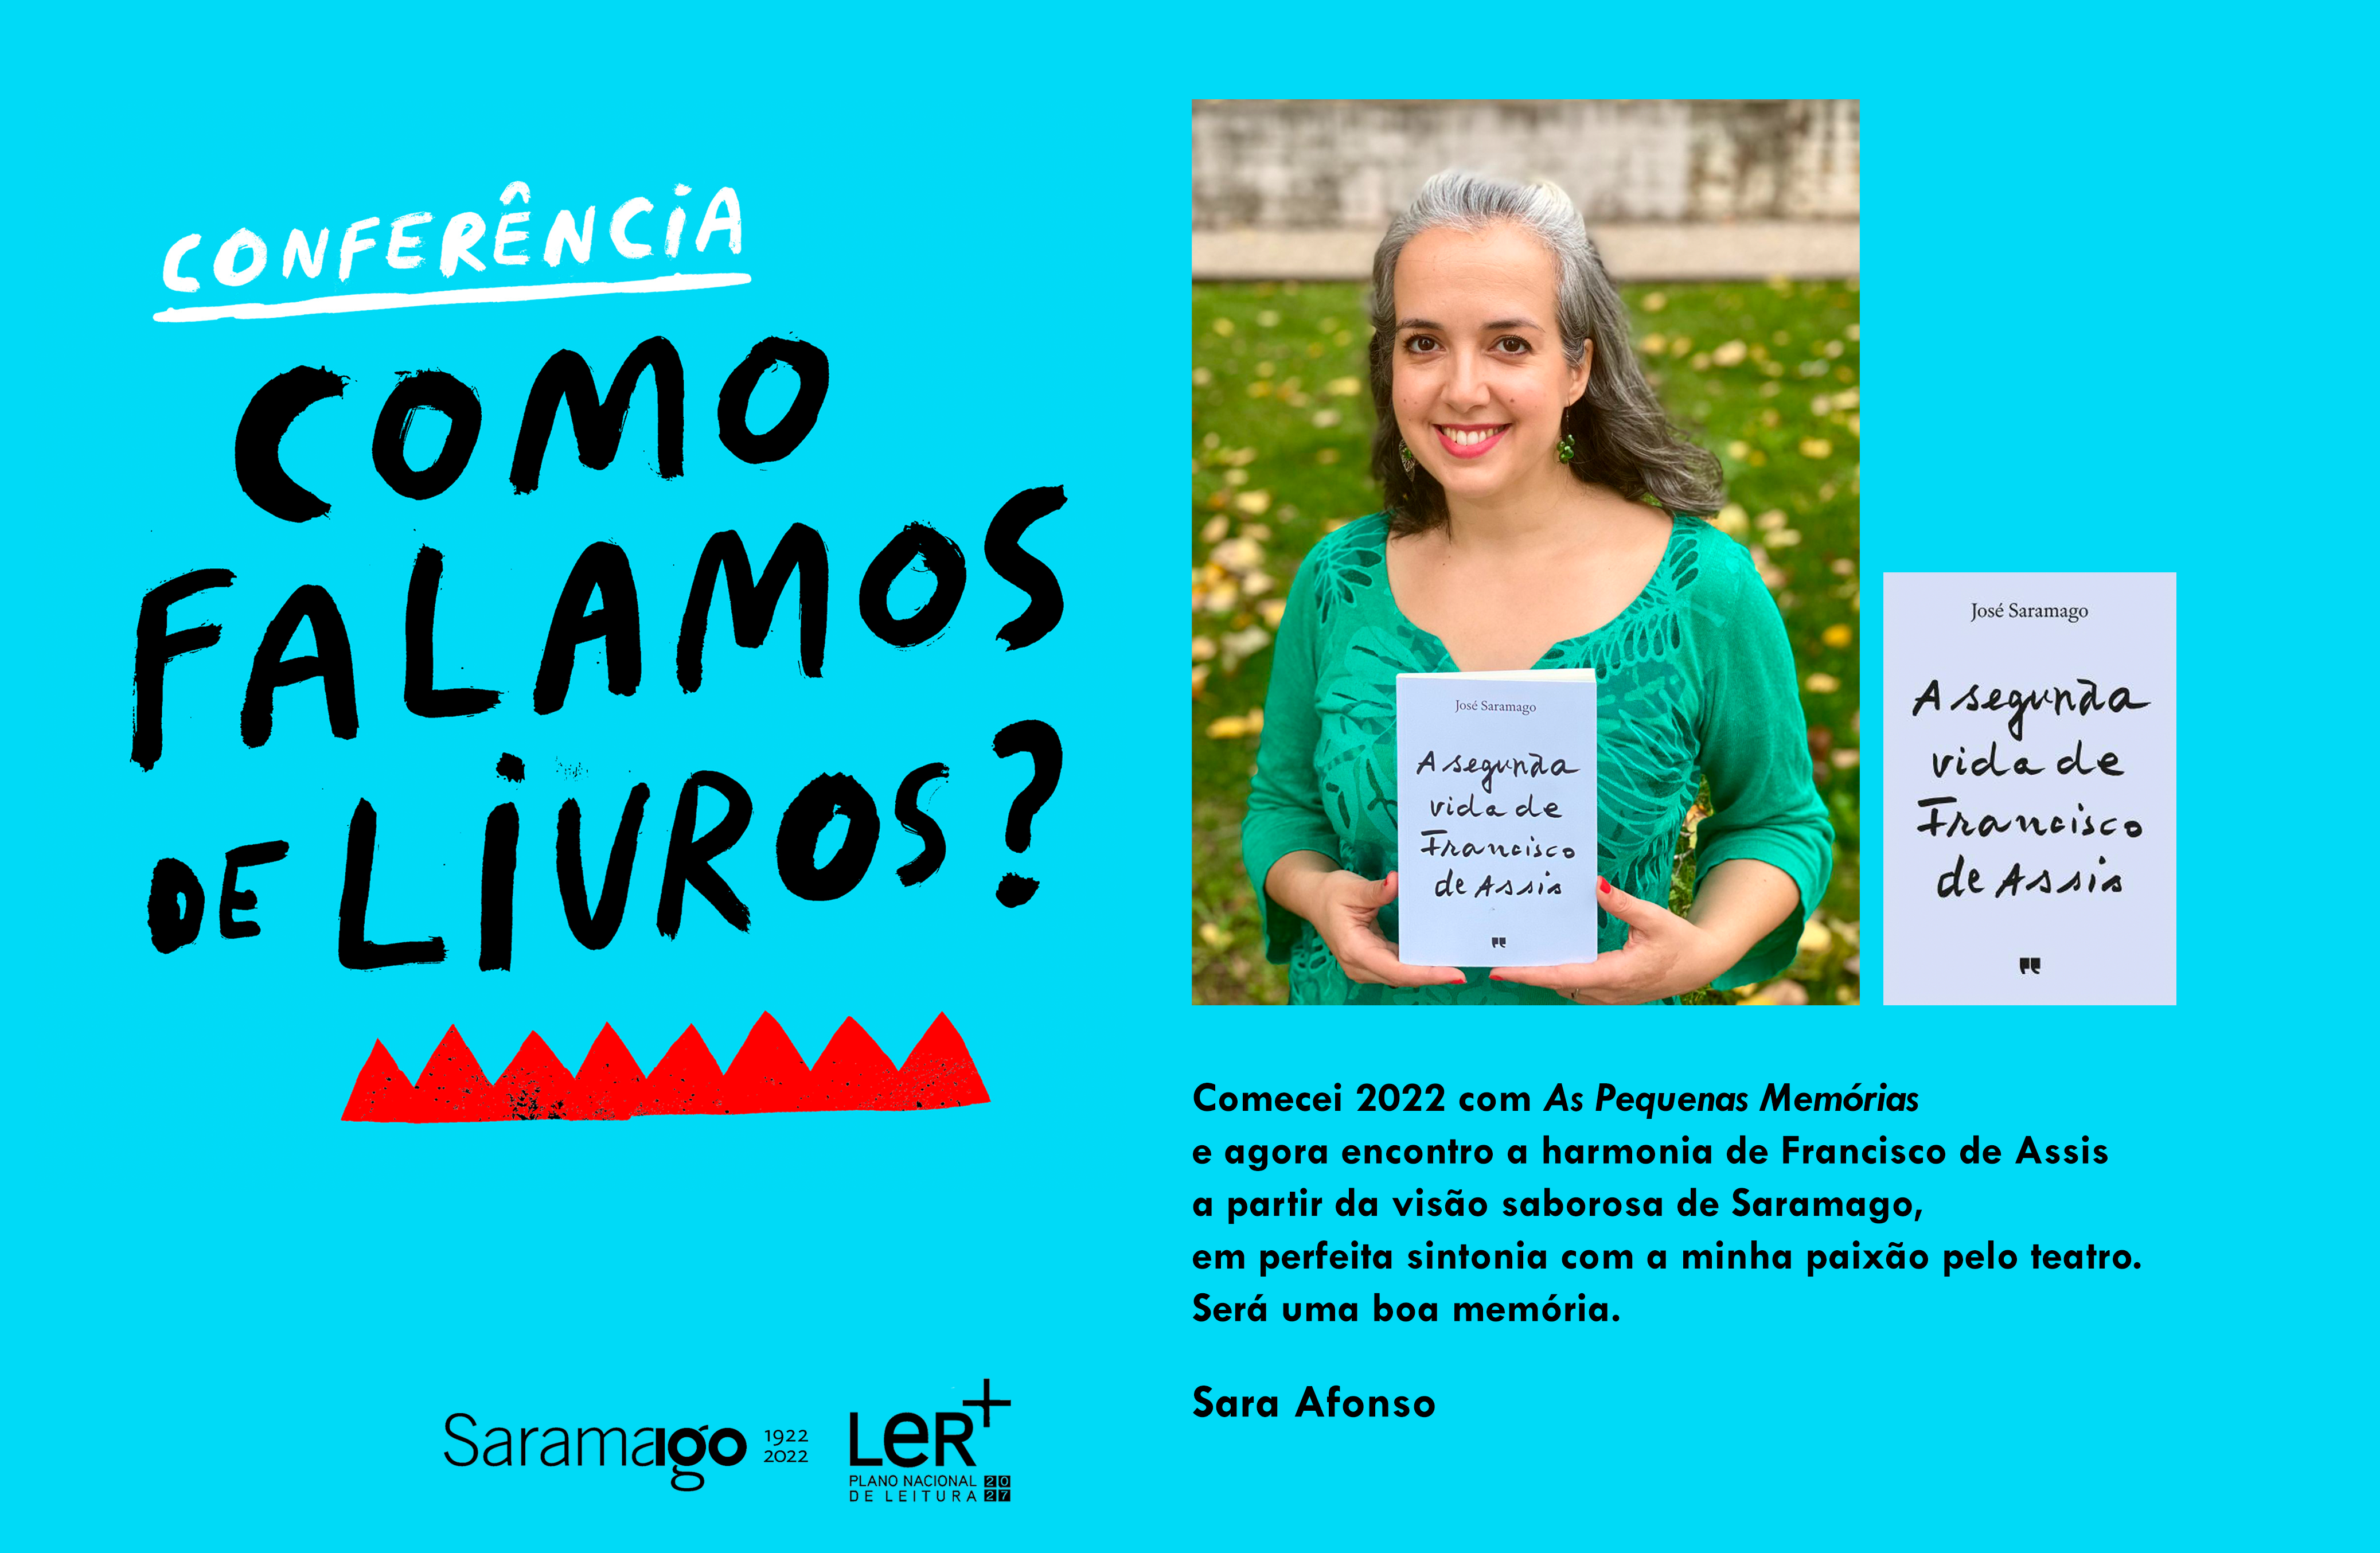 Ler_Saramago_SAfonso